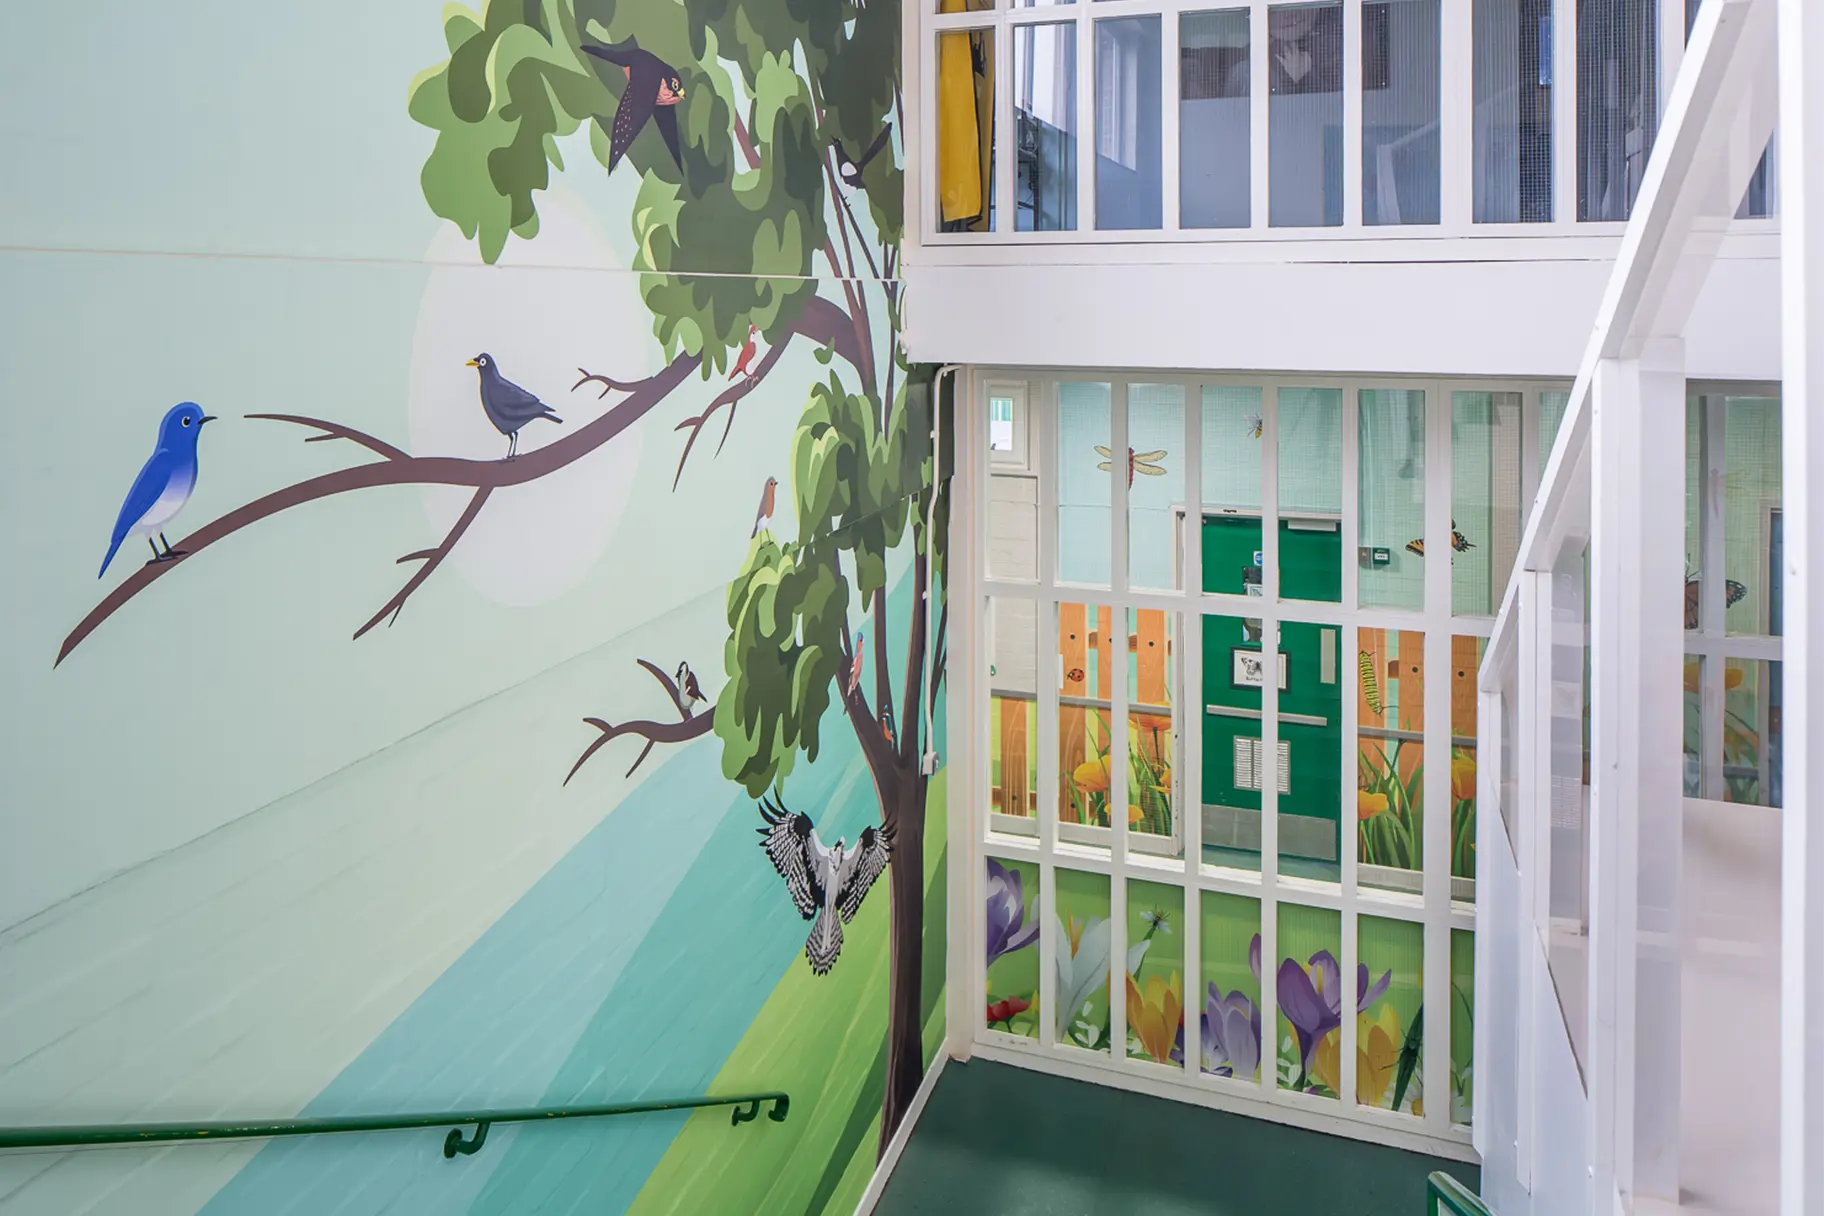 Five Acre Wood School bespoke themed stairway wall art